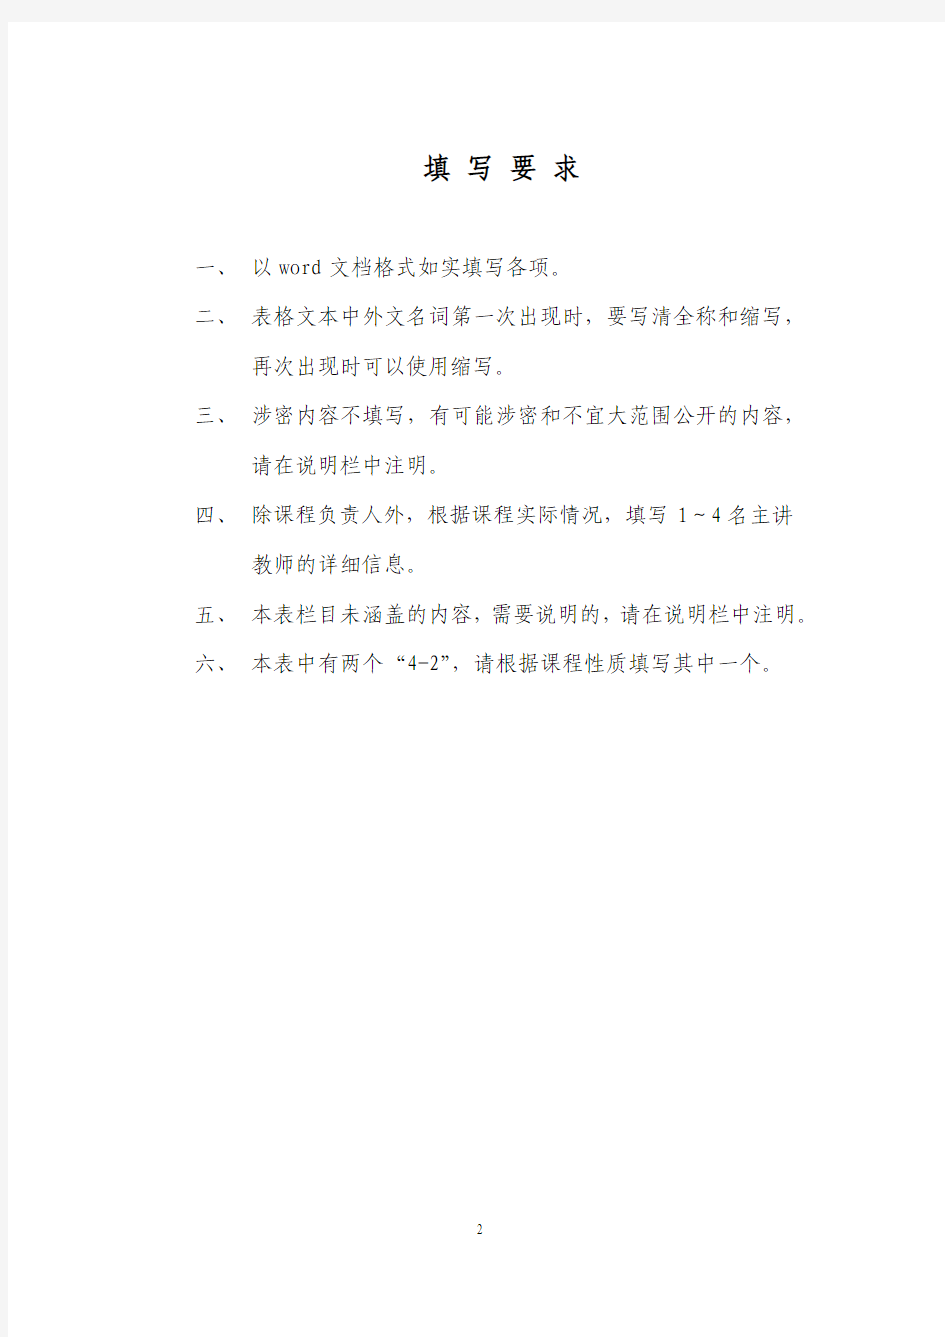 桂林电子工业大学 校级精品课程申报表